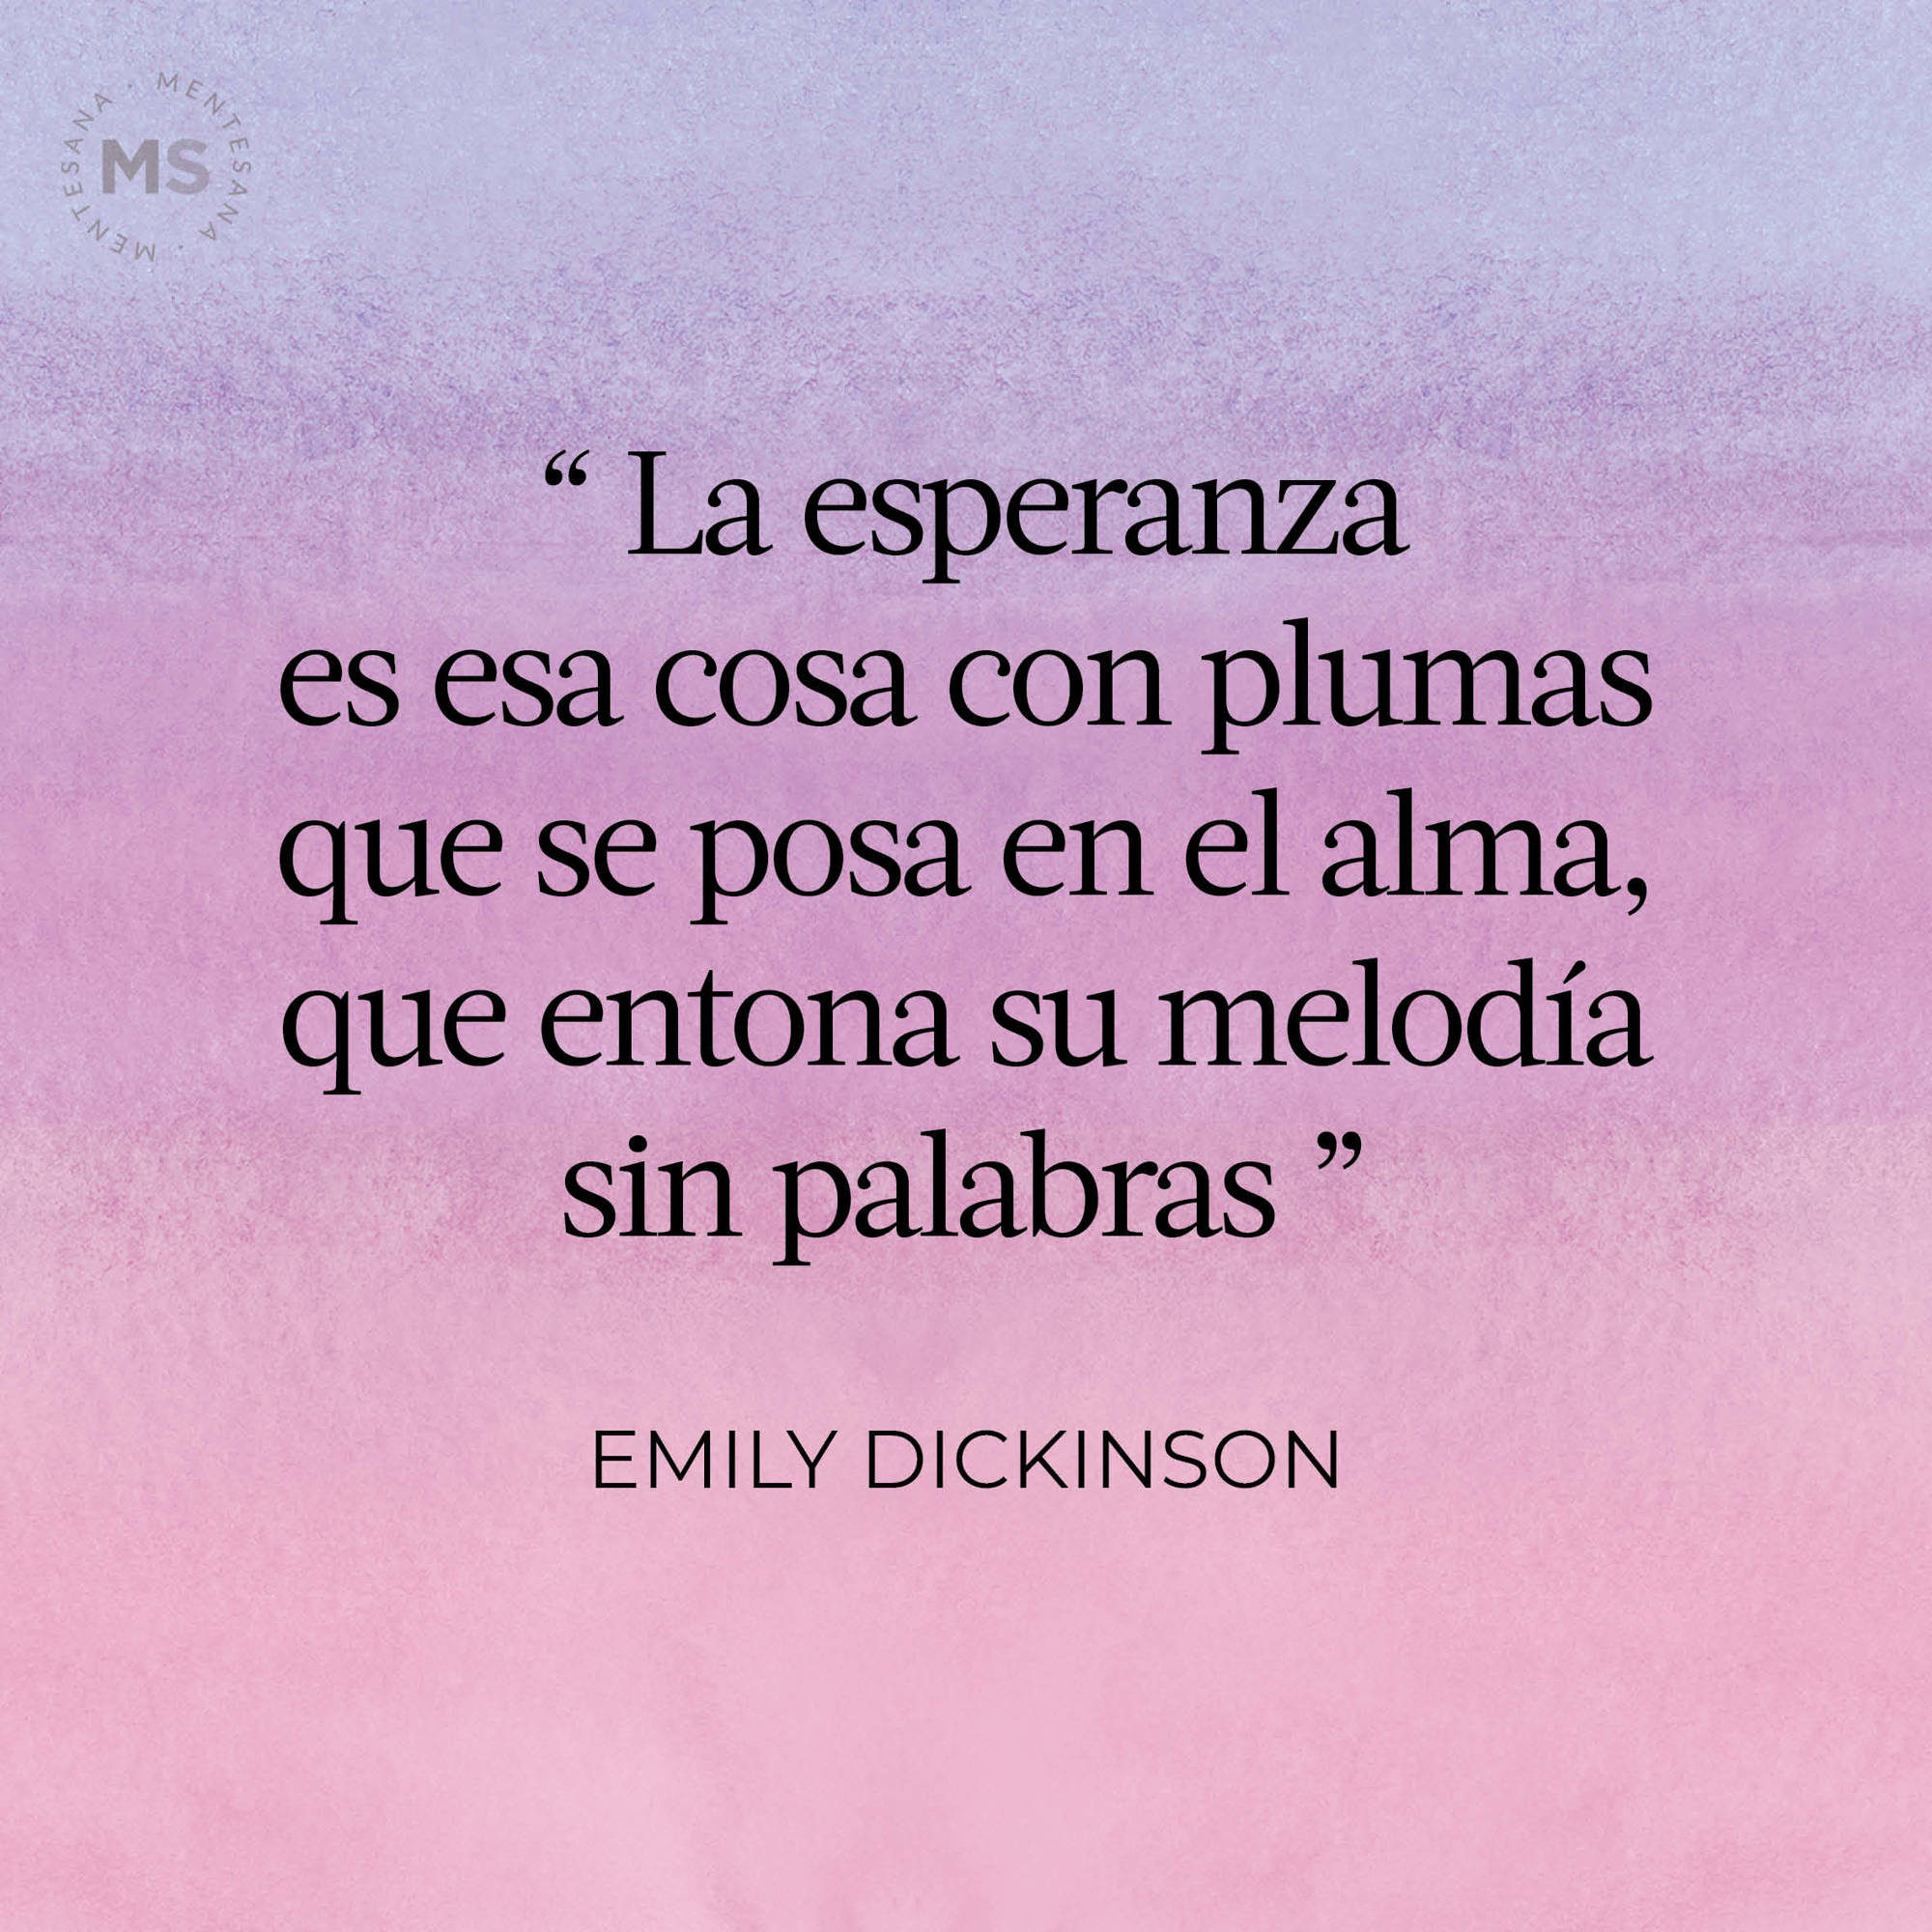 314 (poema de Emily Dickinson)